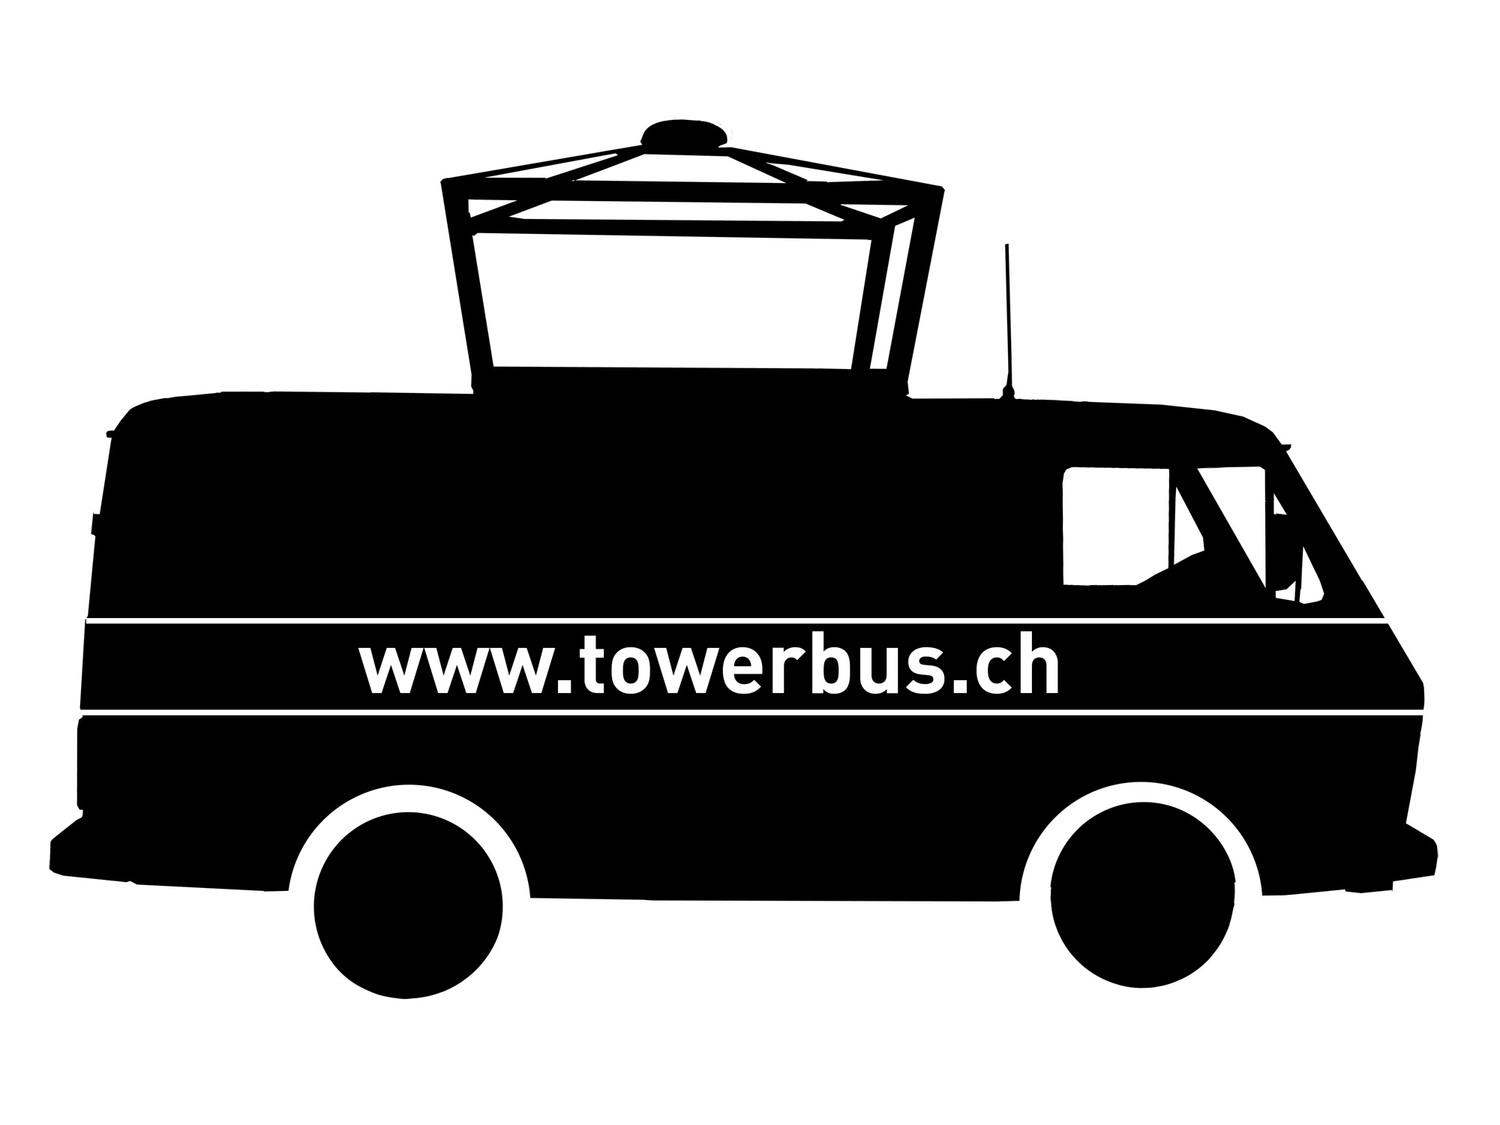 (c) Towerbus.ch